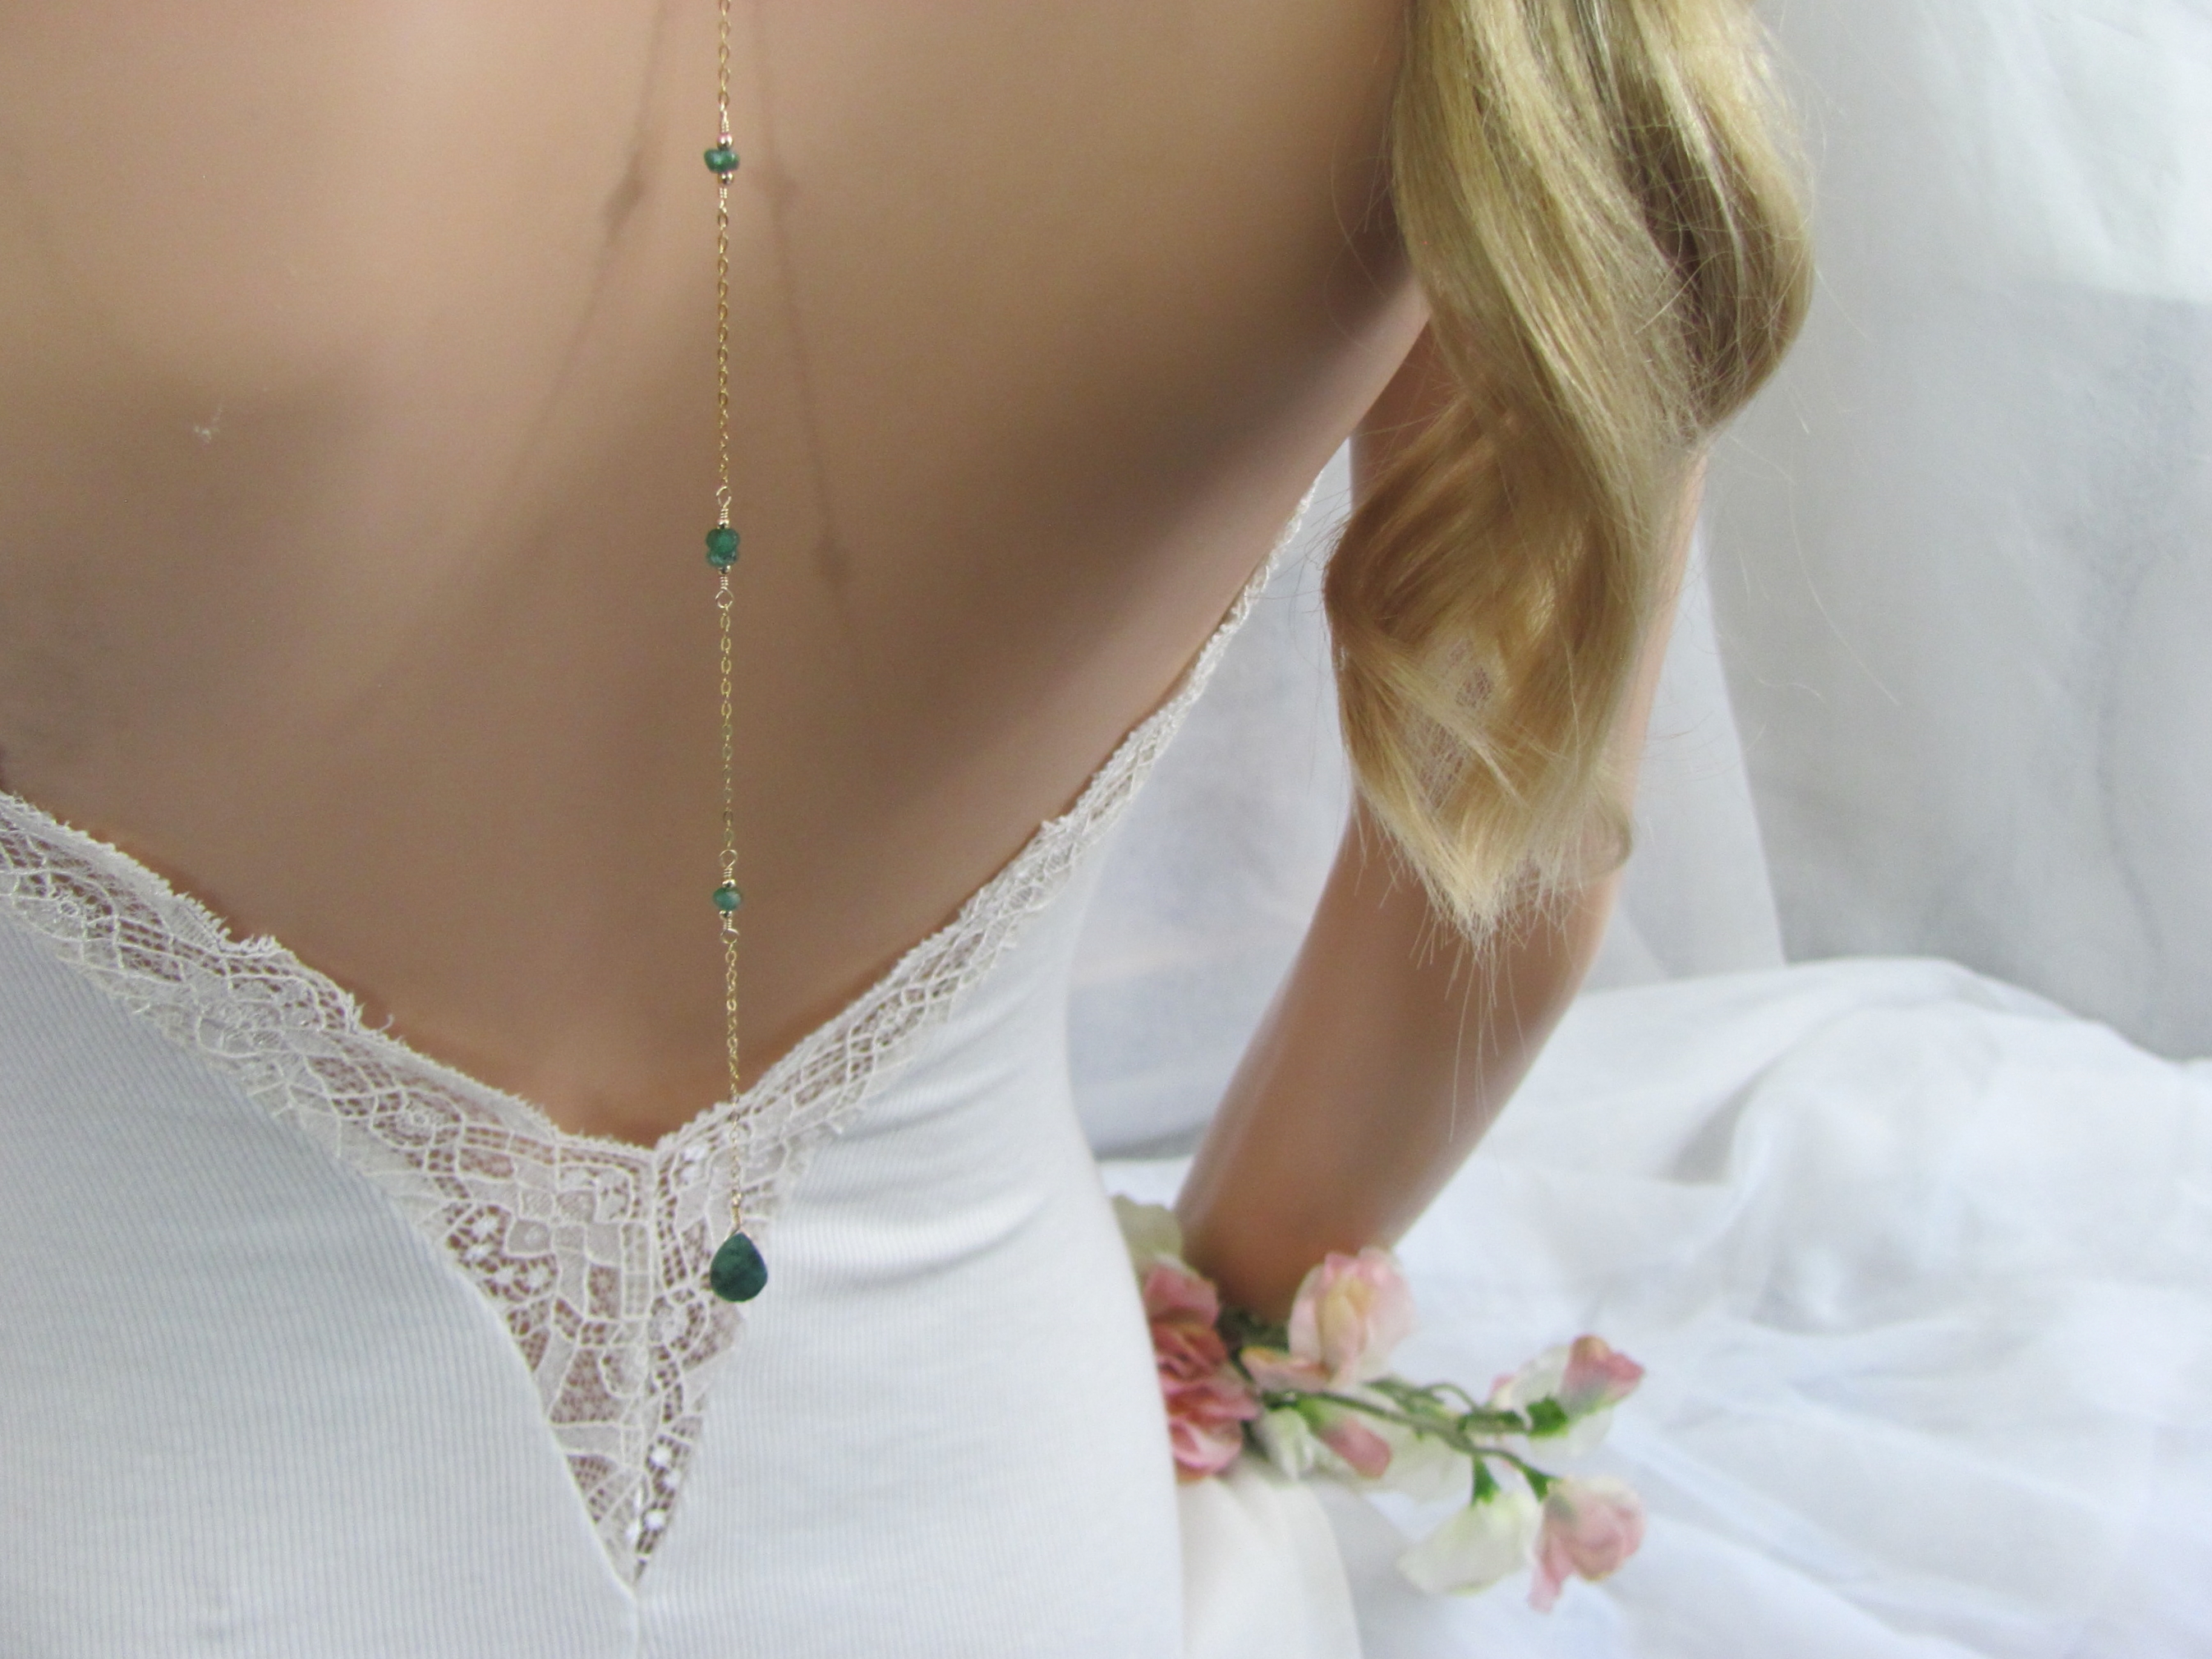 Boho Wedding Backdrop Necklace with Raw Emerald